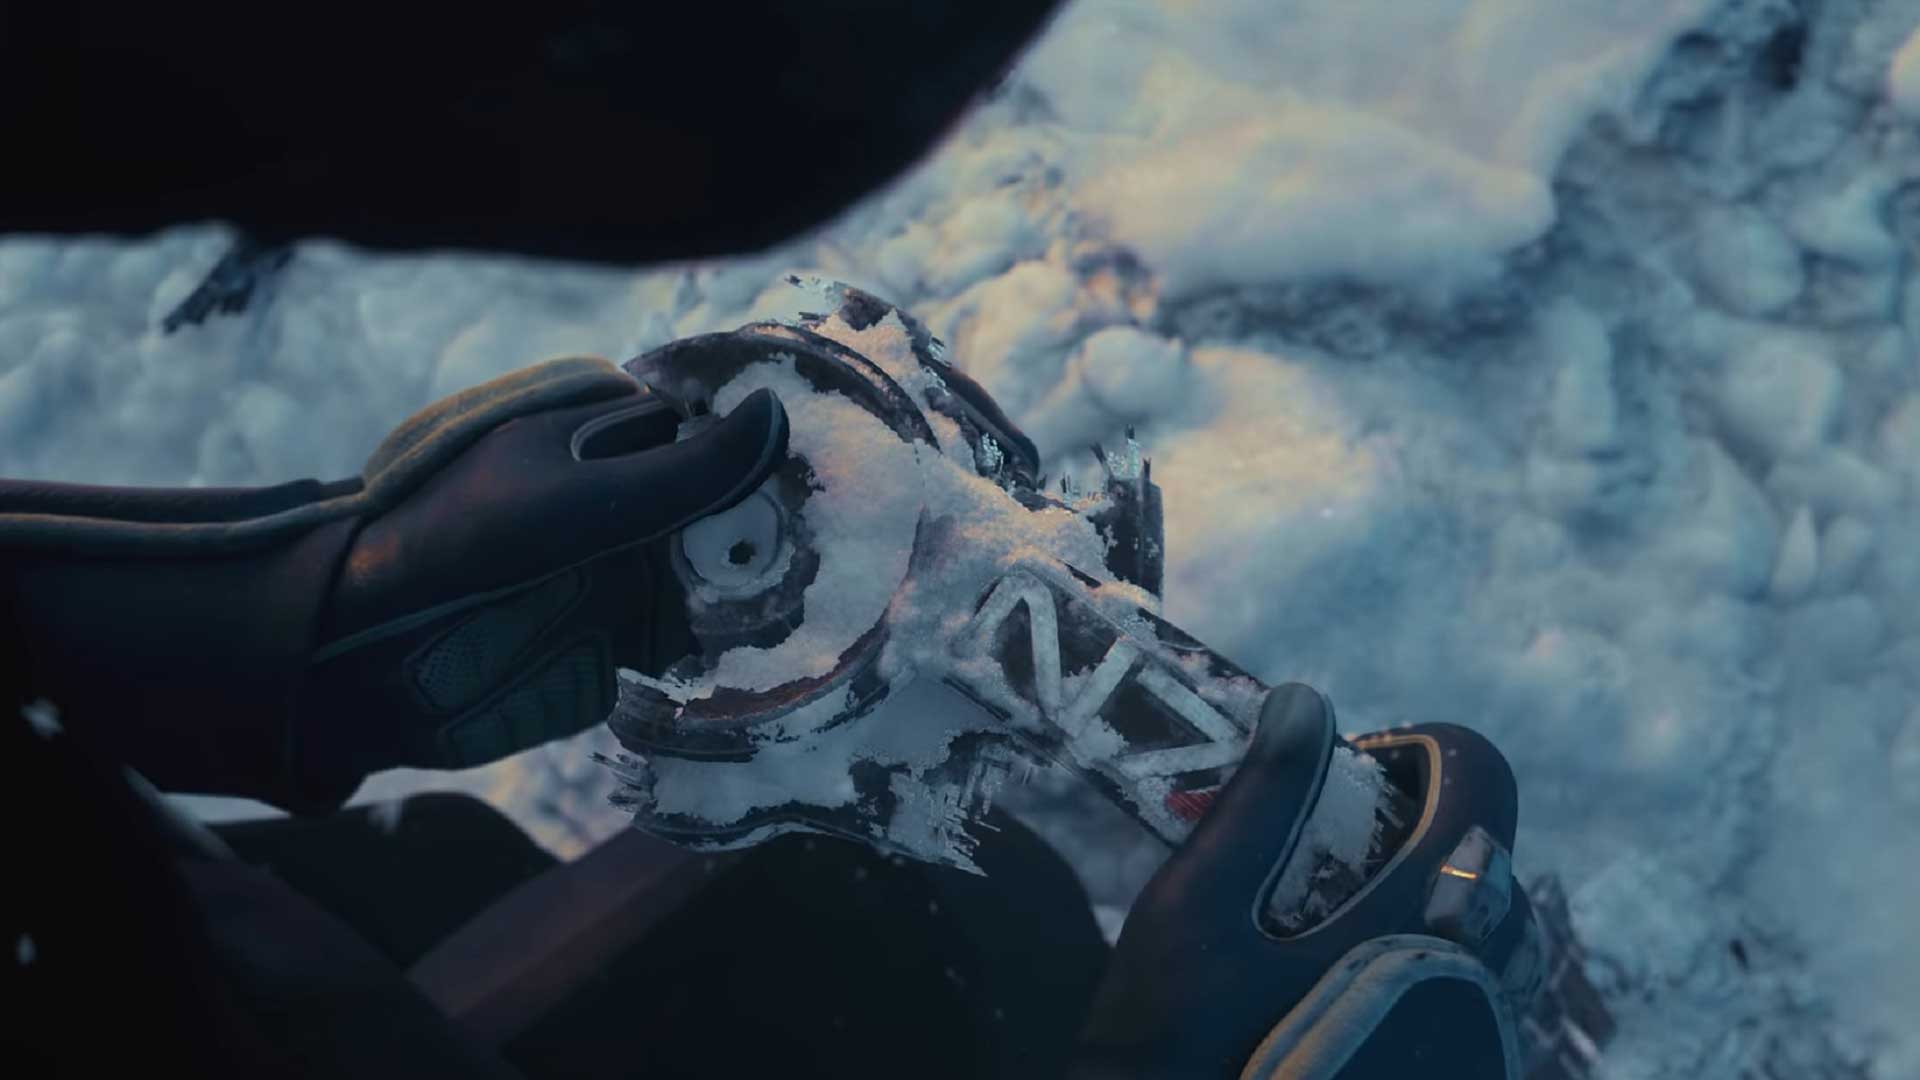 تصویری از تیزر سینماتیک بازی Mass Effect جدید استودیو بایوور